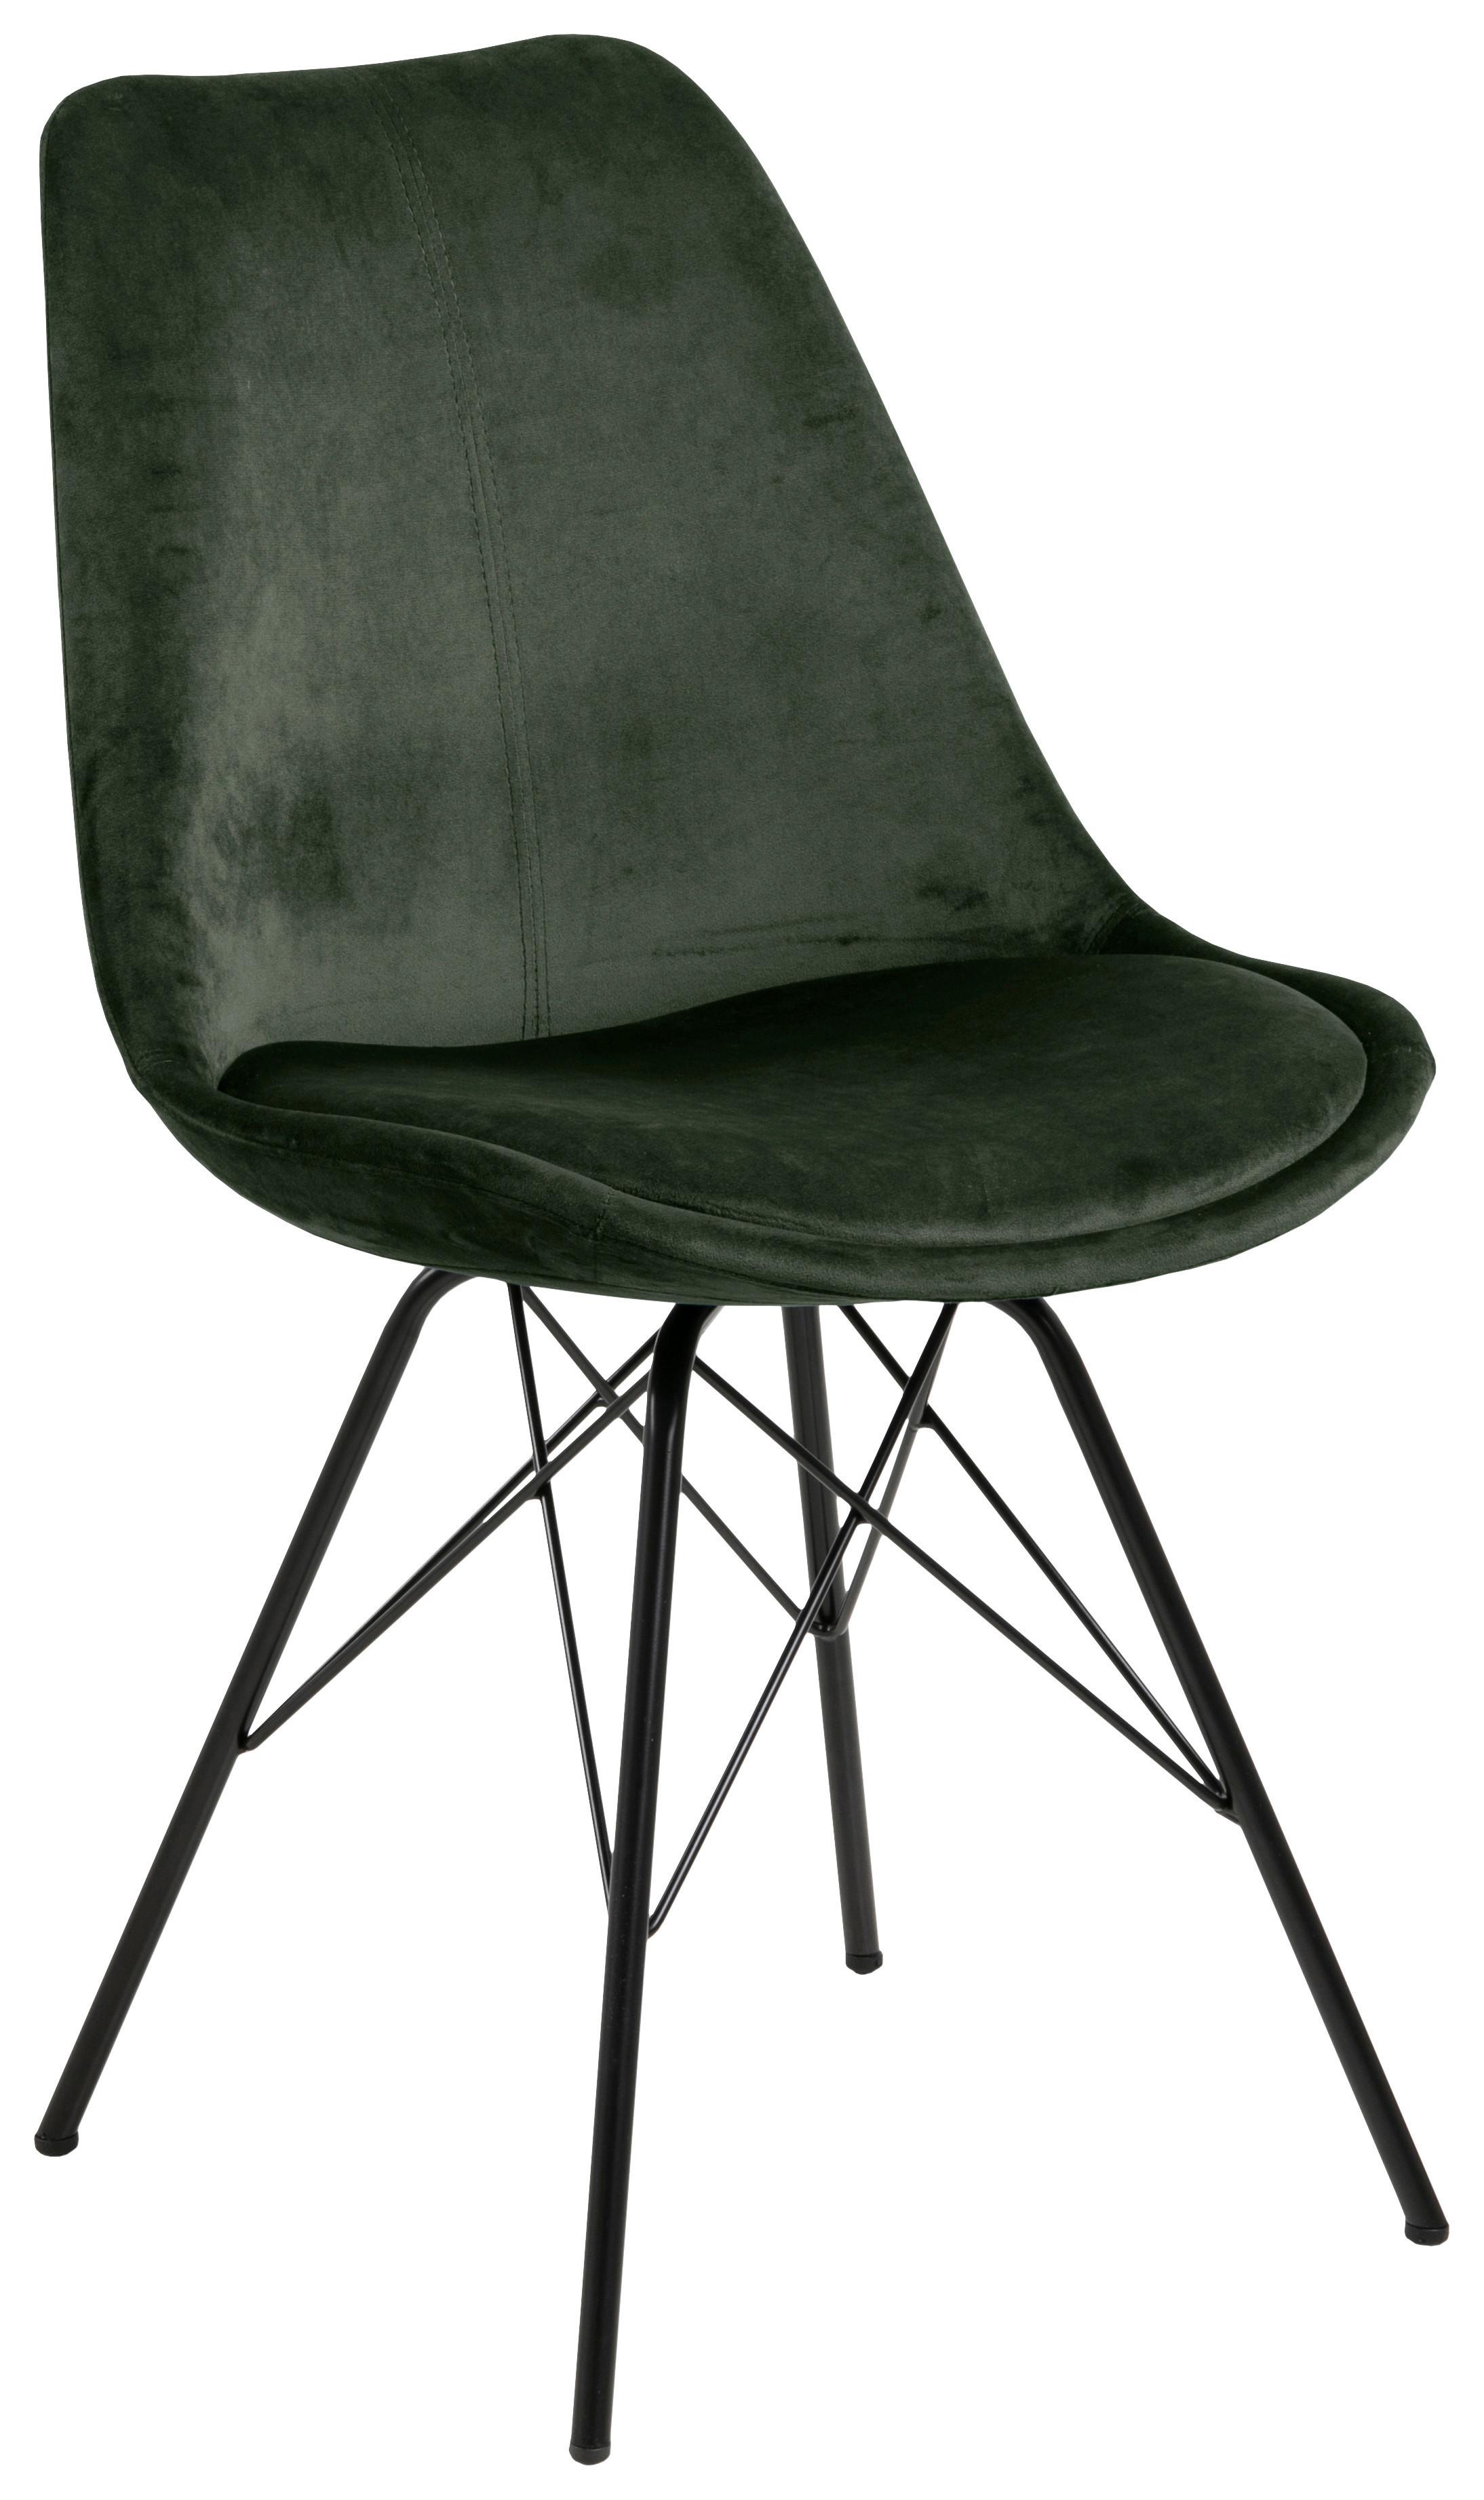 Jídelní Židle Eris Tmavě Zelená - černá/lesní zelená, Trend, kov/textil (48,5/85,5/54cm) - Carryhome